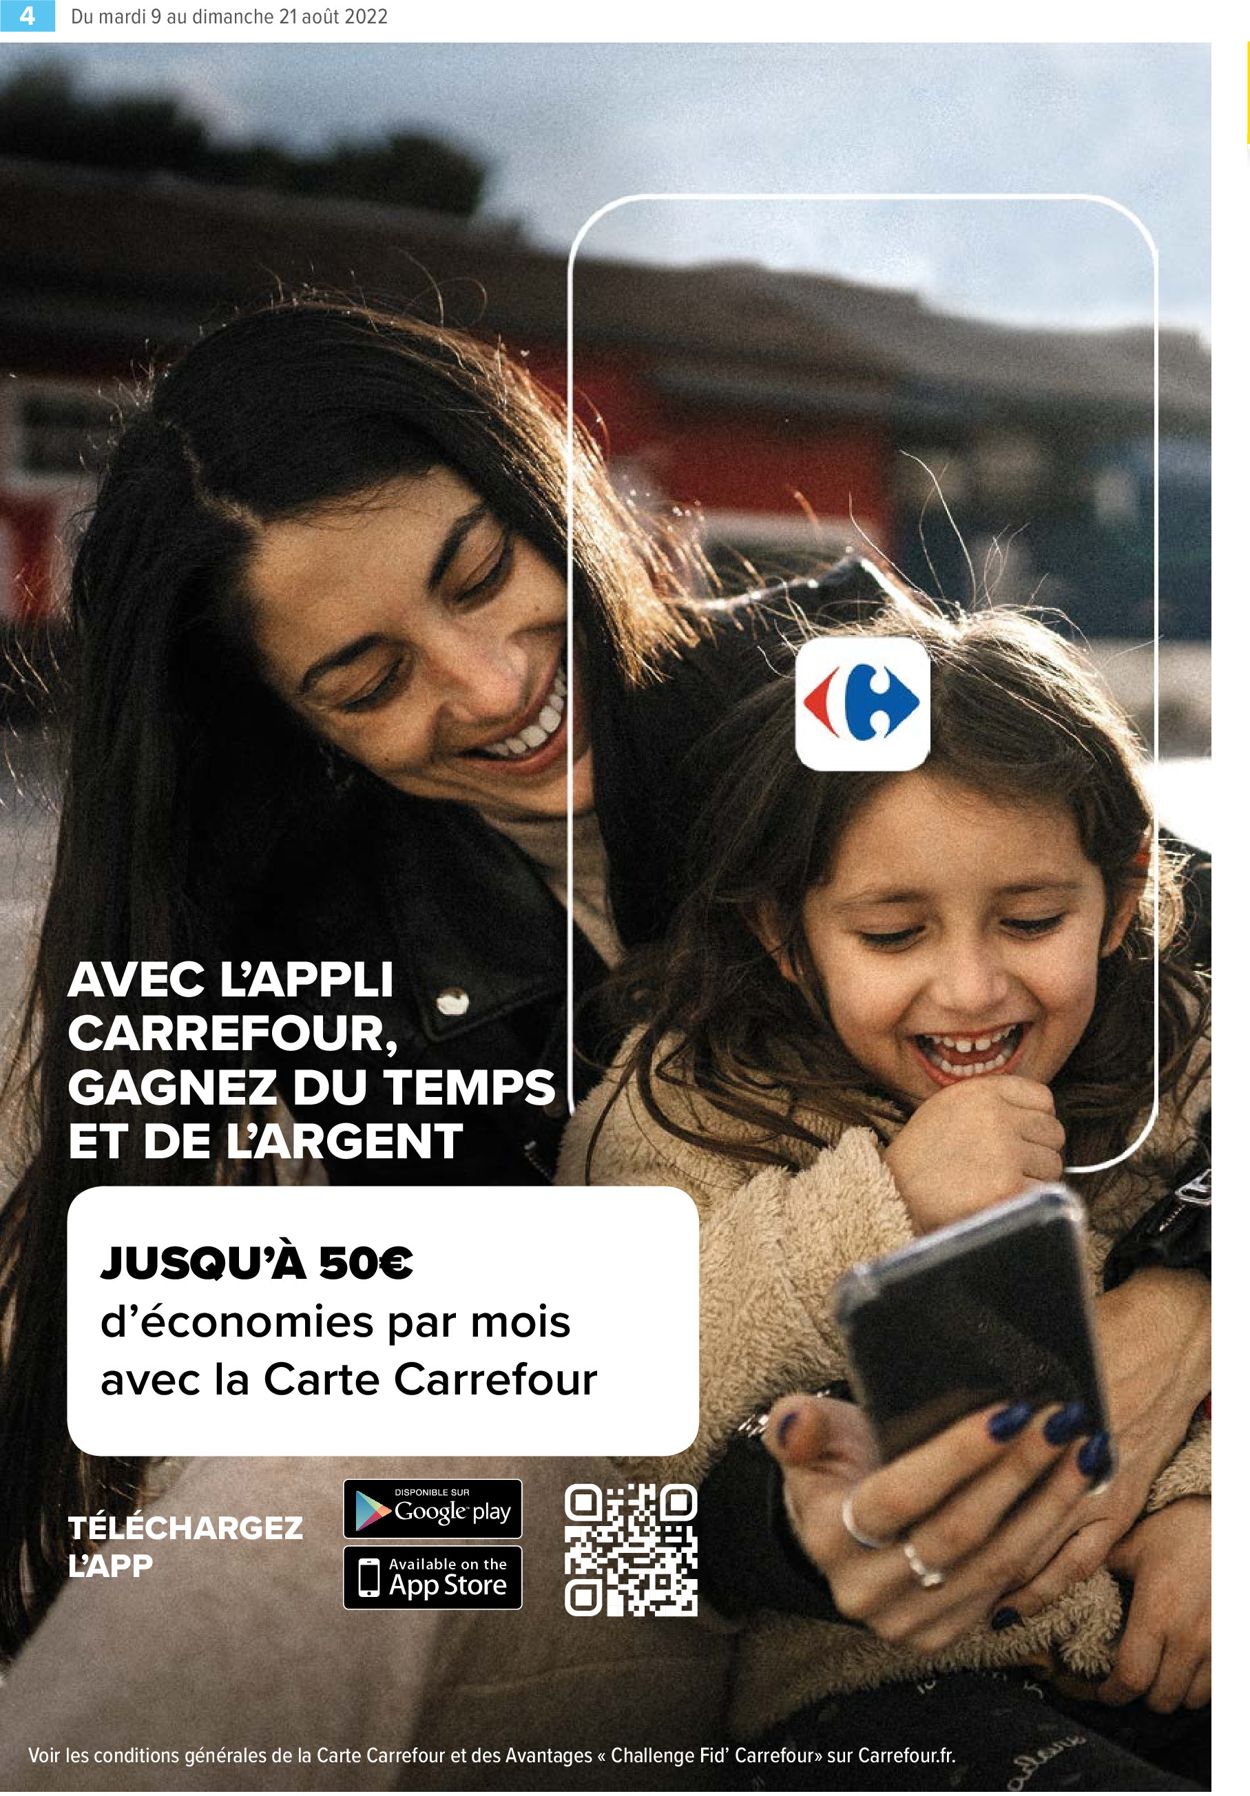 Carrefour Market Catalogue du 09.08.2022